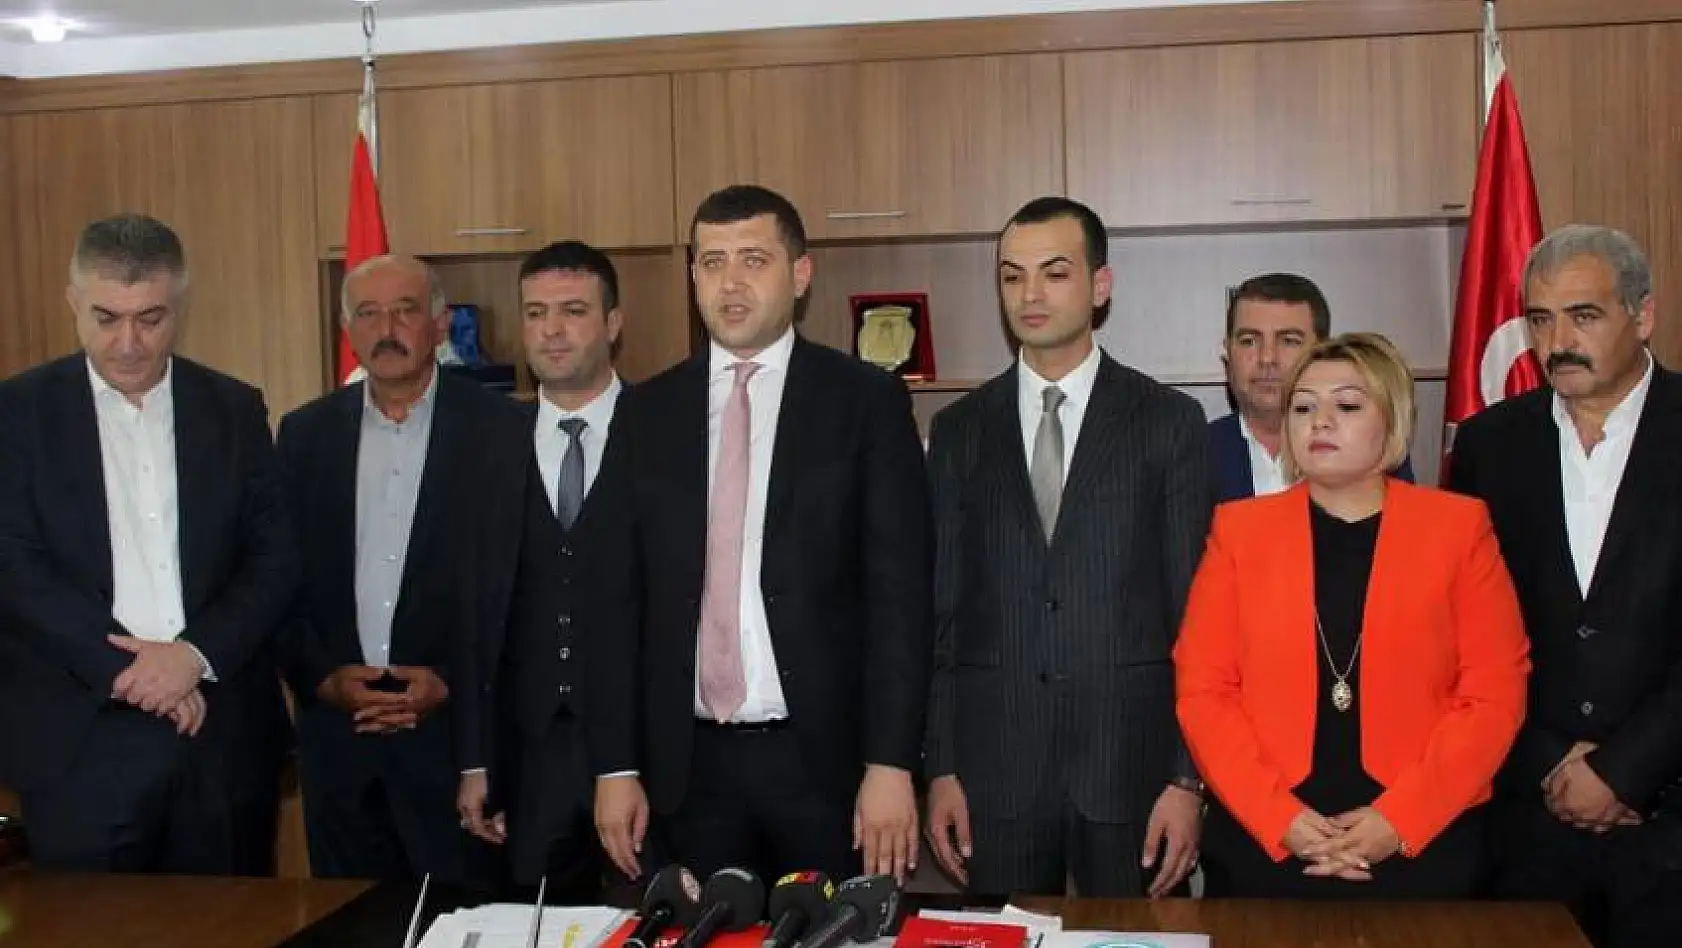 MHP İl Başkanı Ersoy'dan yeni parti tepkisi:  Rüzgarın kayadan götüreceği sadece tozdur